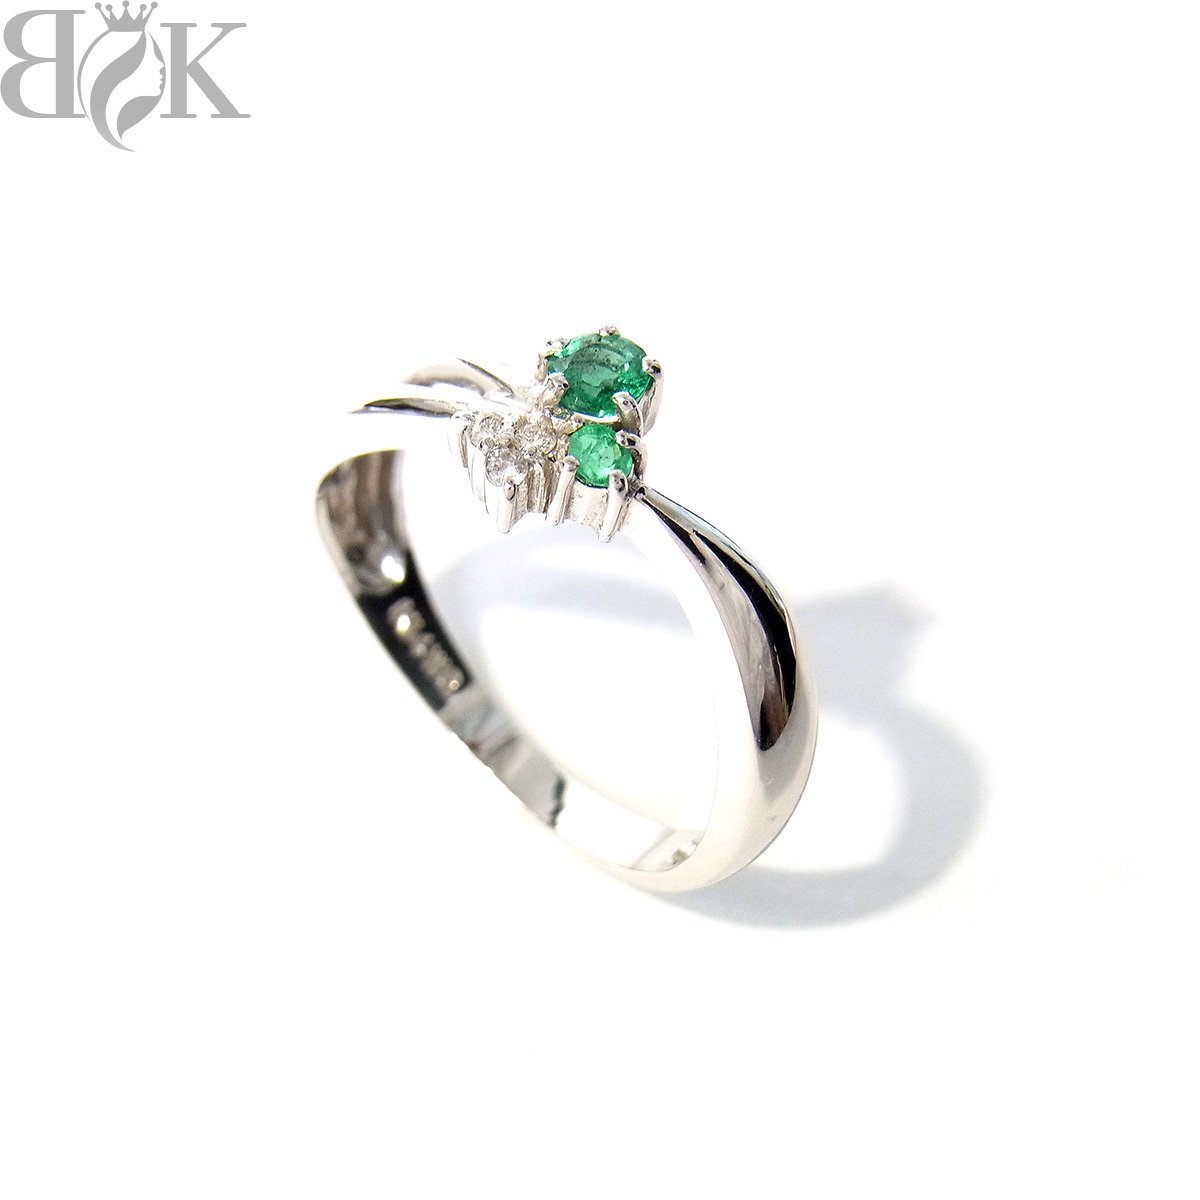 美品 K14WG デザインリング 指輪 メレダイヤ 緑石 ホワイトゴールド 約11.5号 総重量約1.8g 超音波洗浄済み 〓